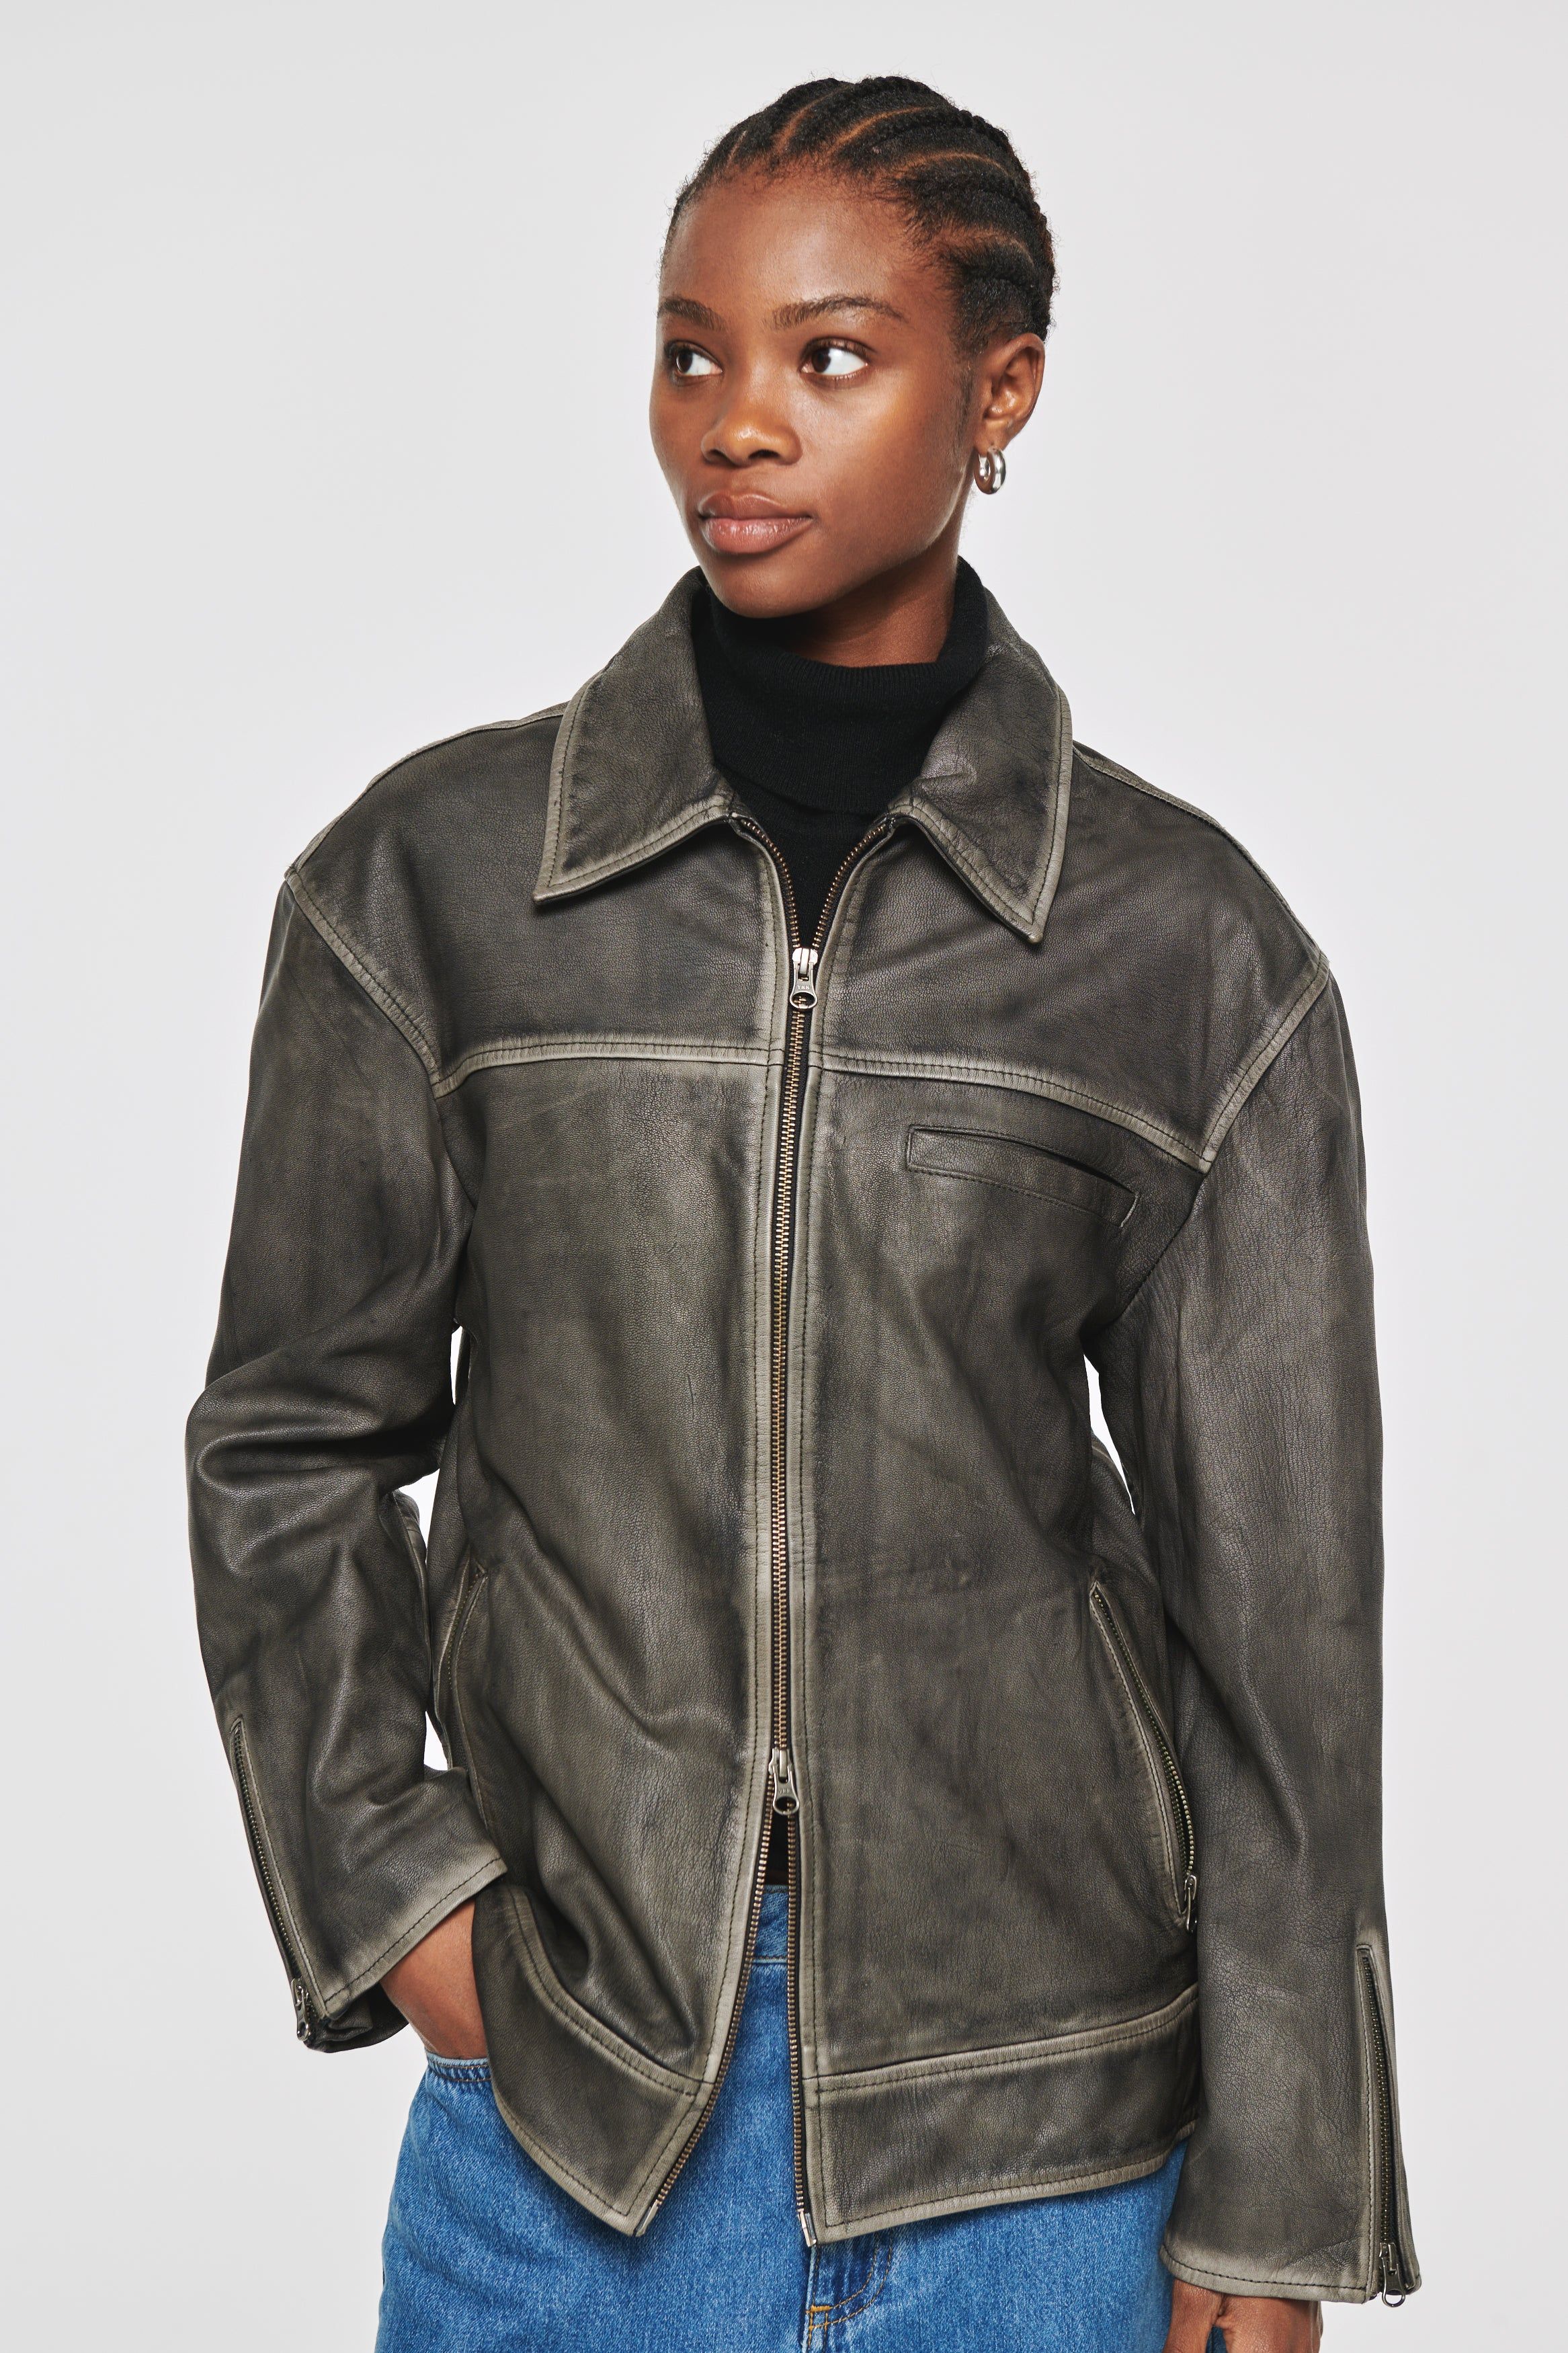 Leroy | Leather Jacket in Tarnished Grey | ALIGNE | Aligne UK